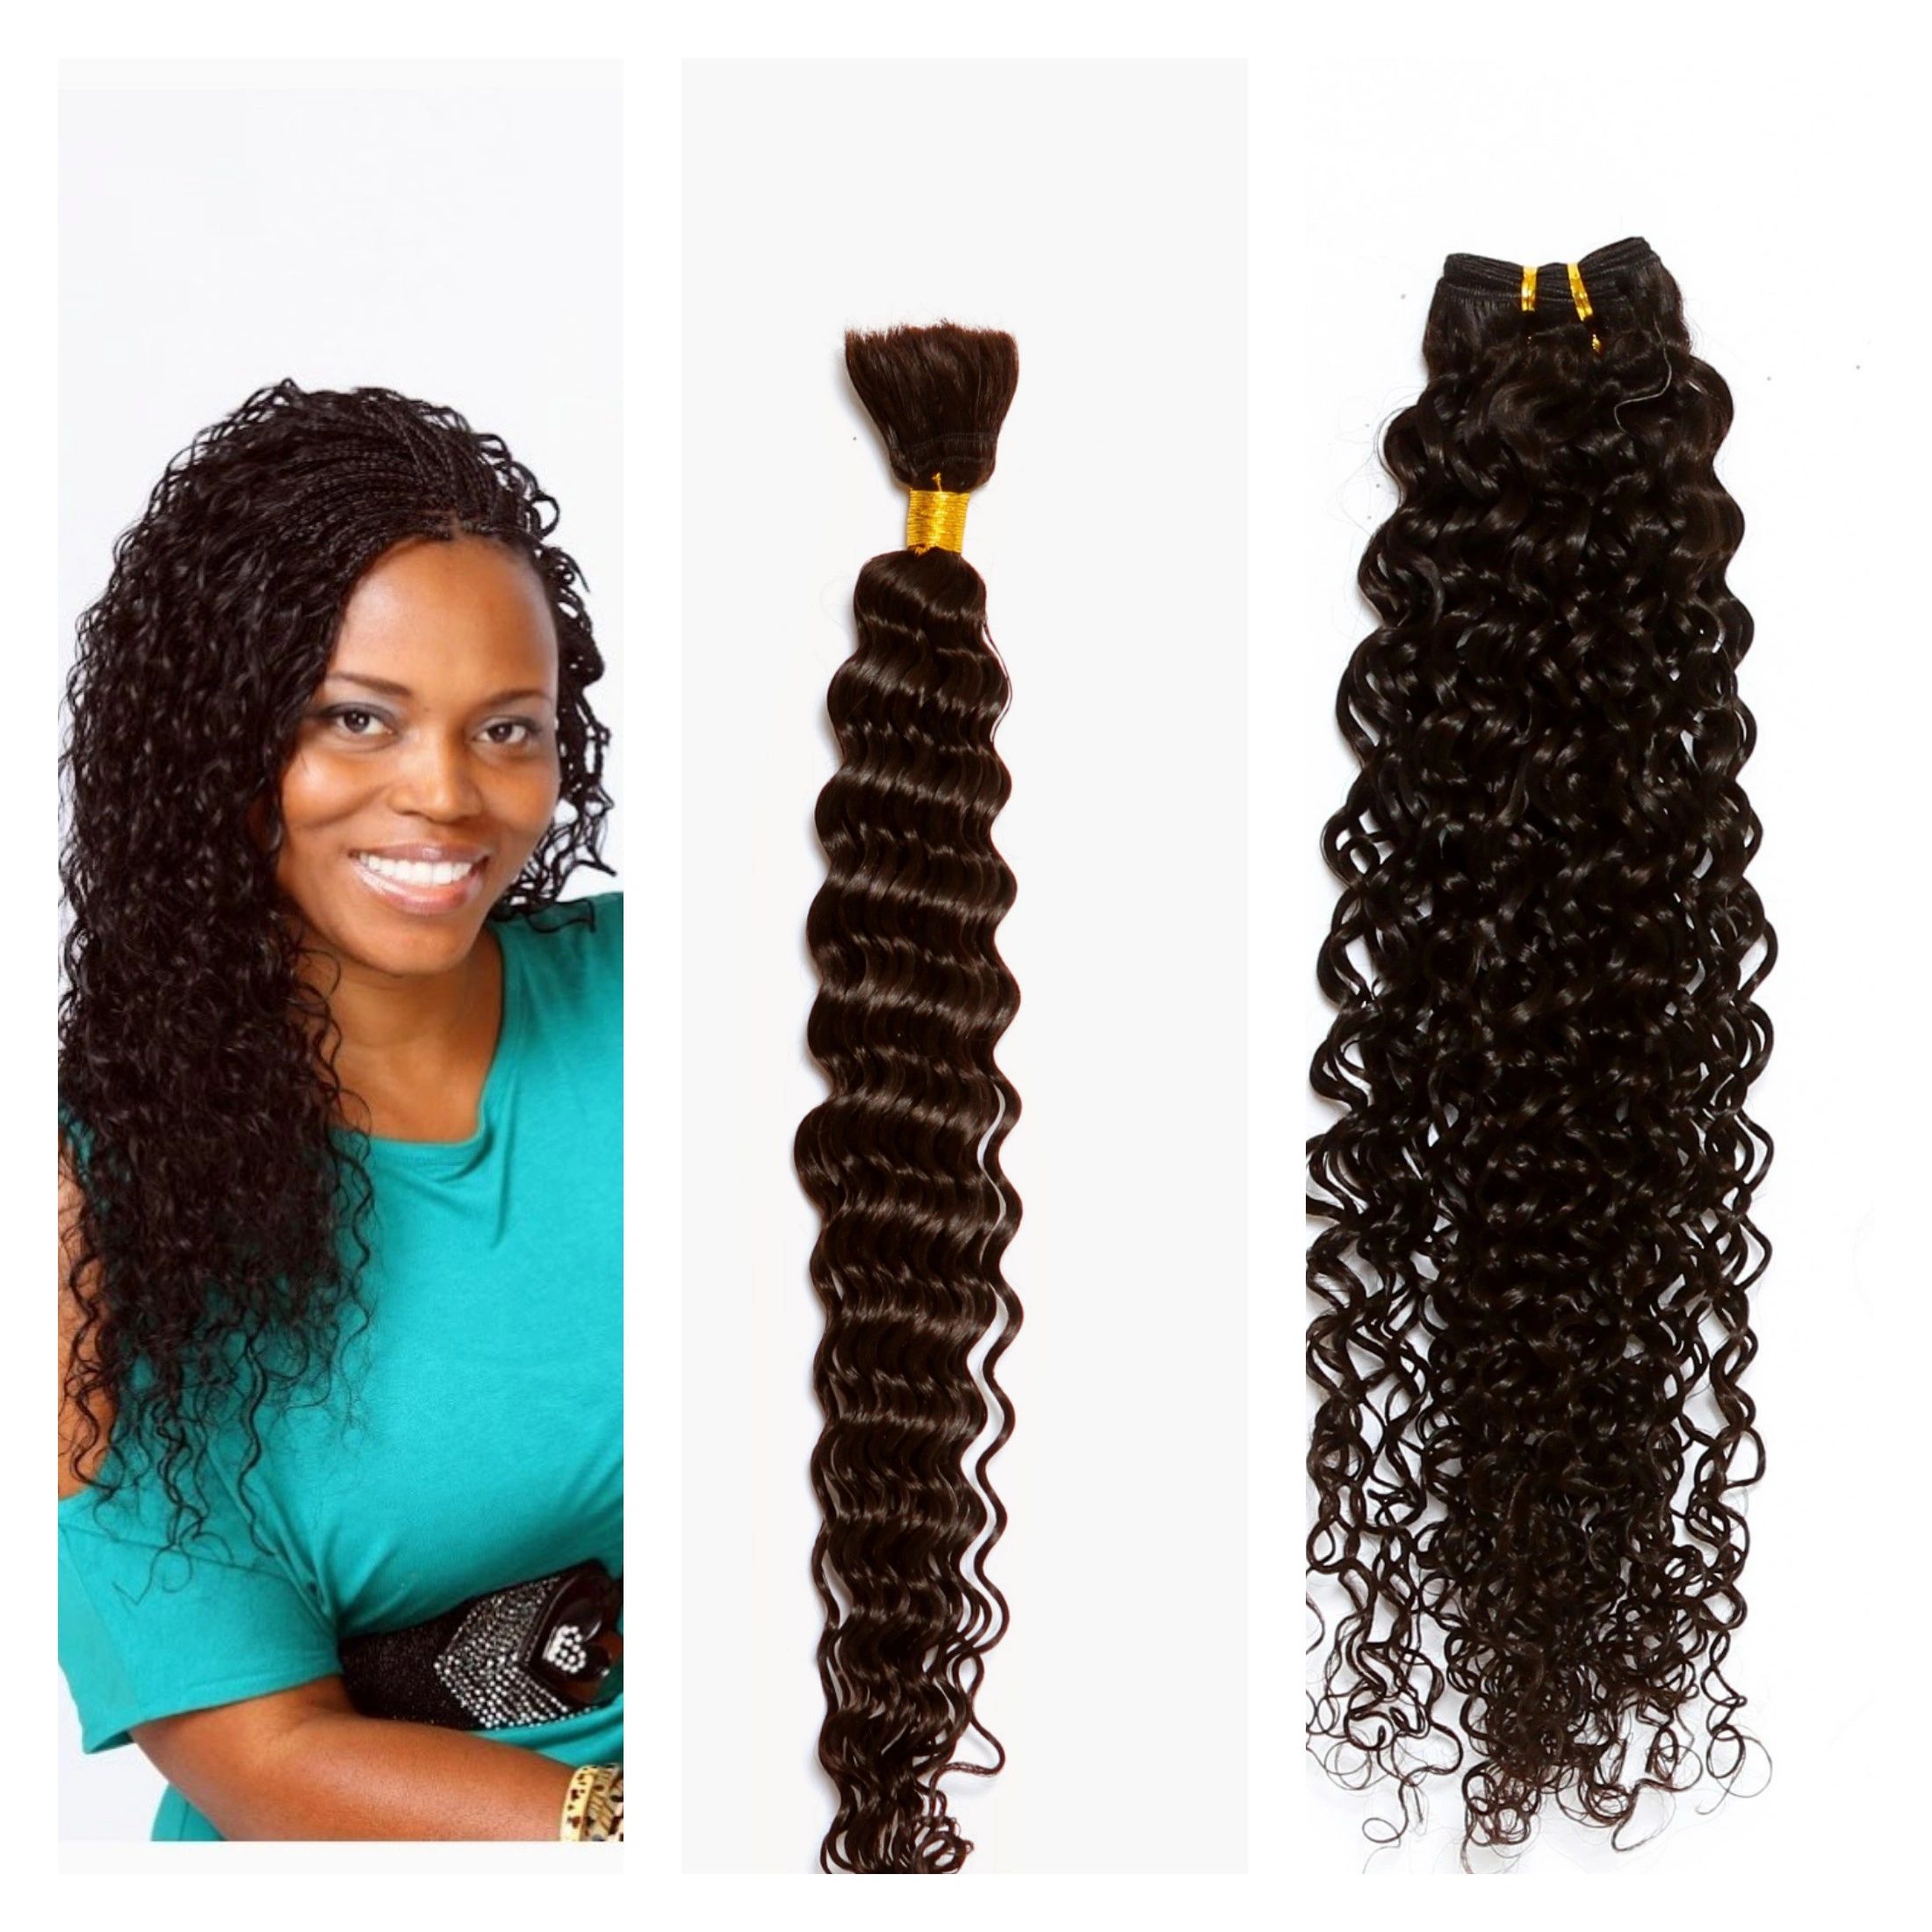 DEDE'S AFRICAN HAIR BRAIDING florida - Micro Braids, Human Hair Micro